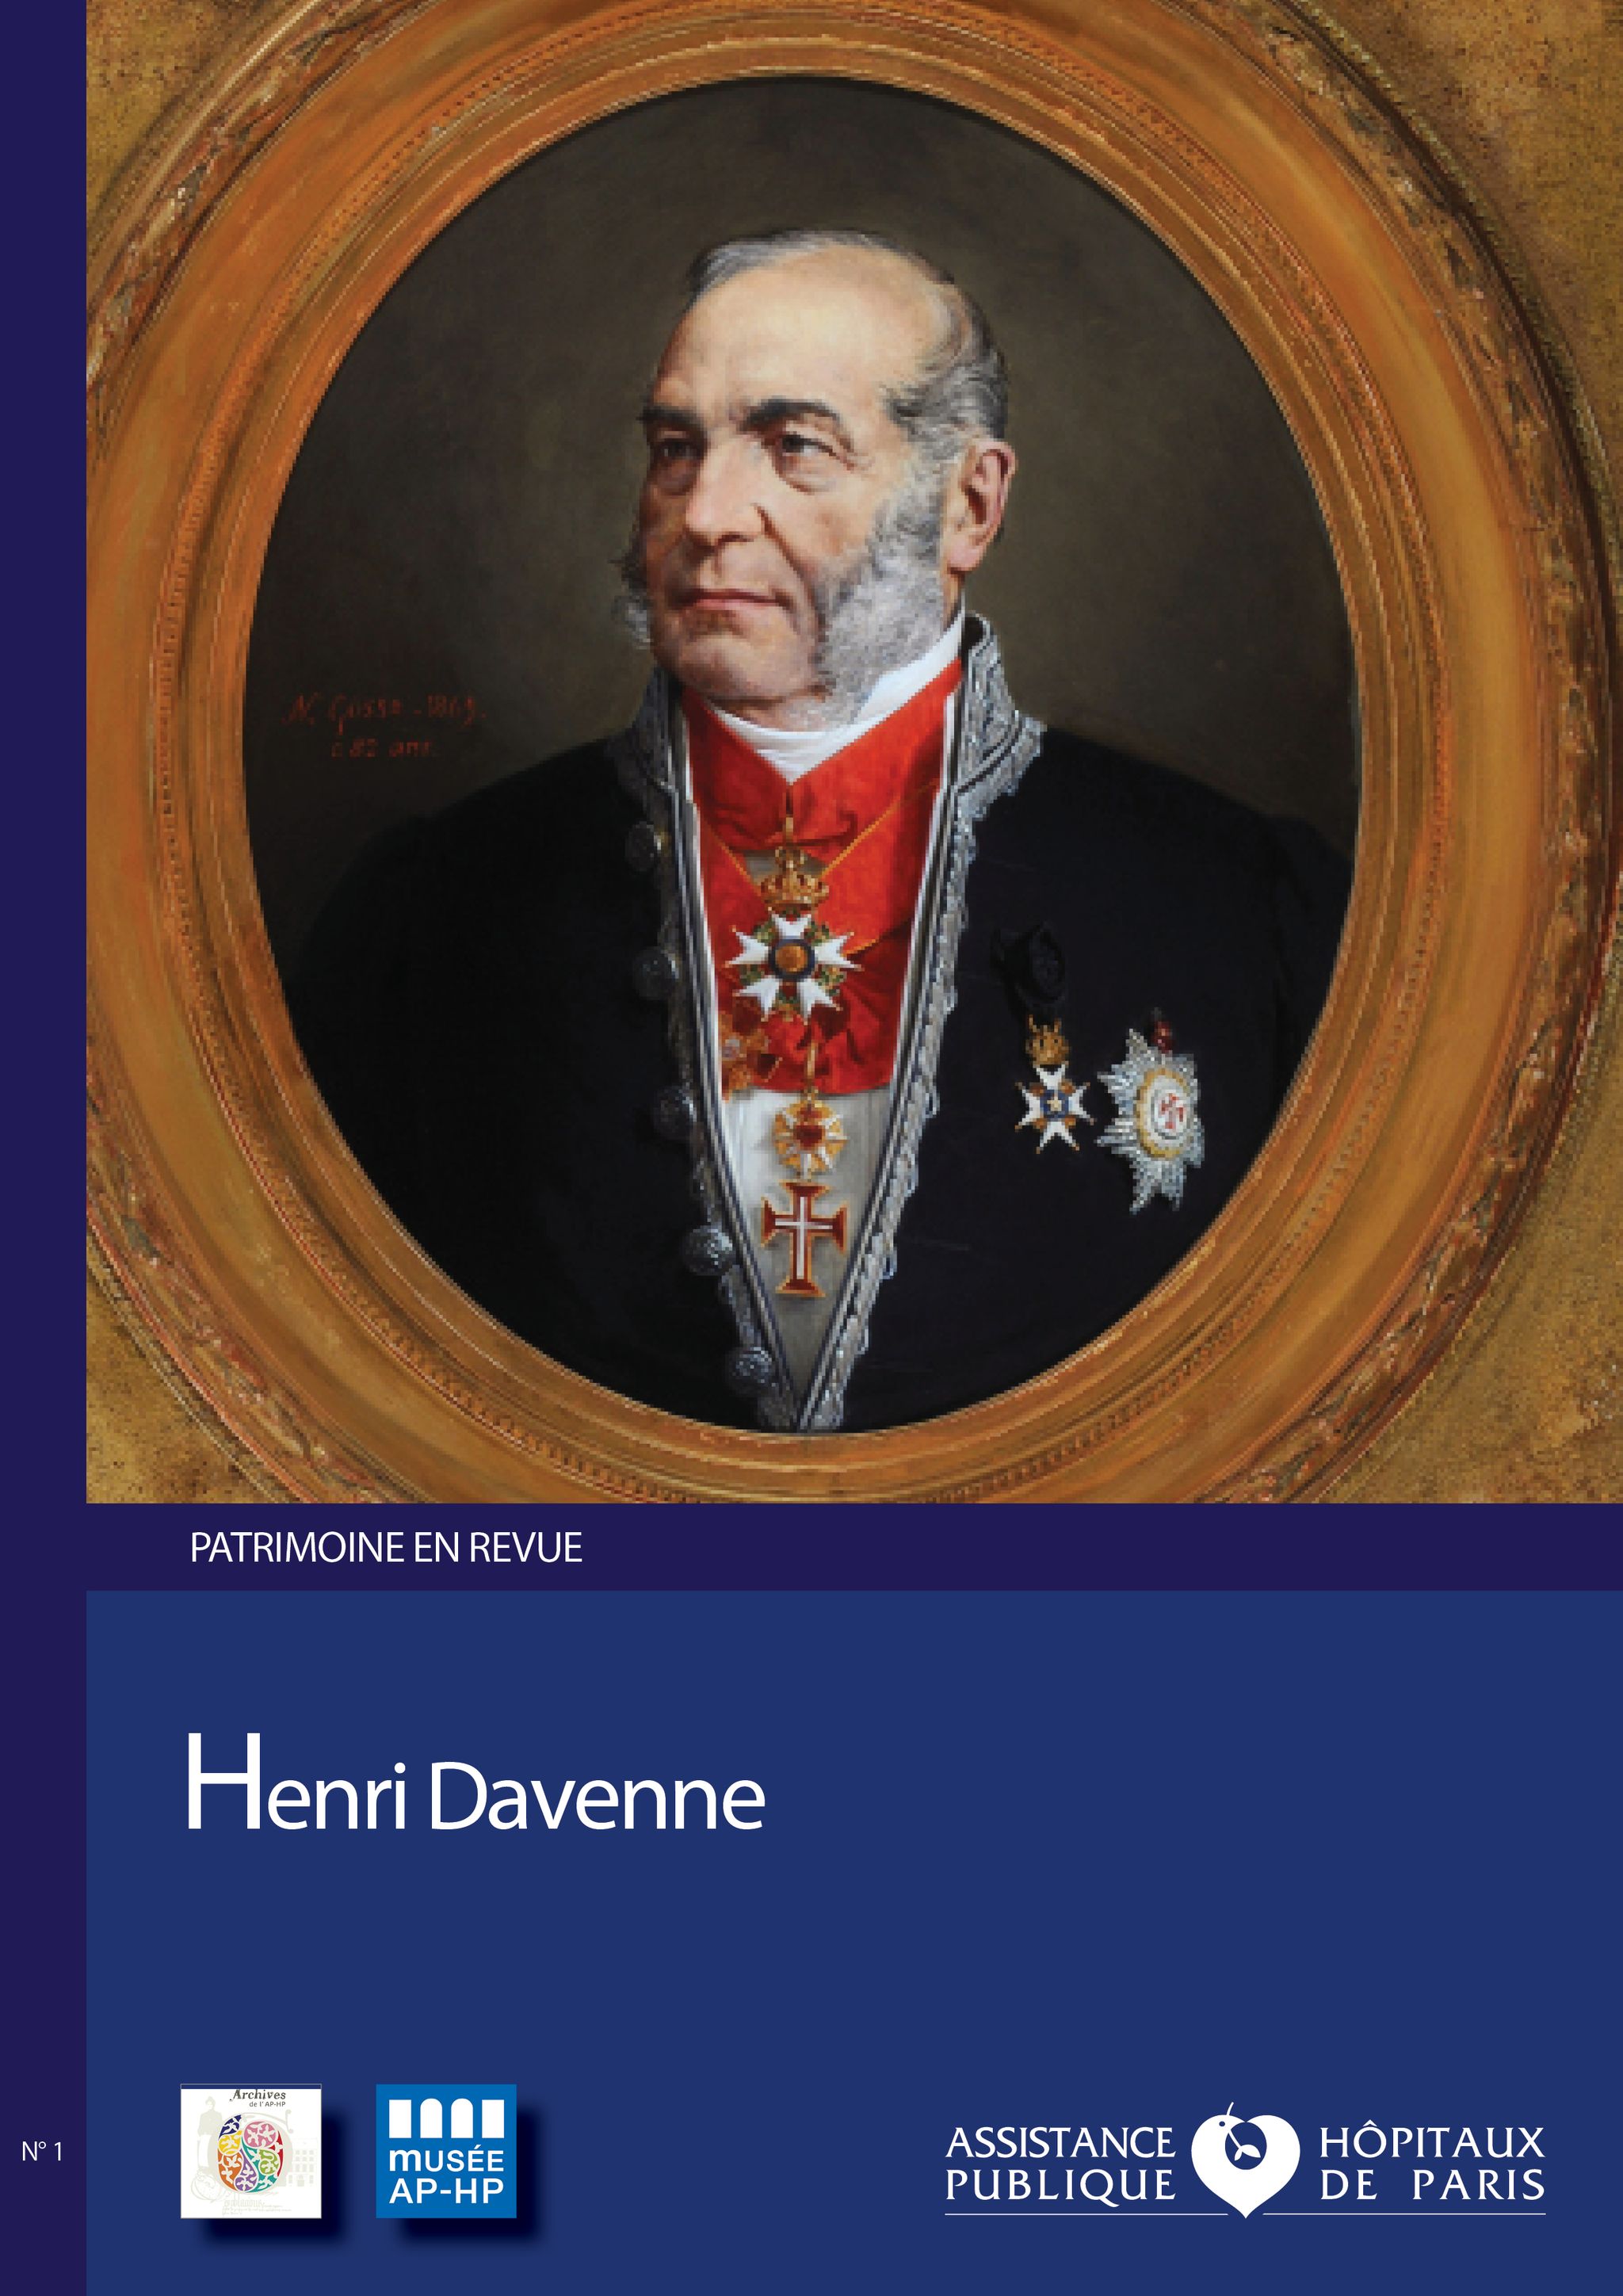 Henri Davenne